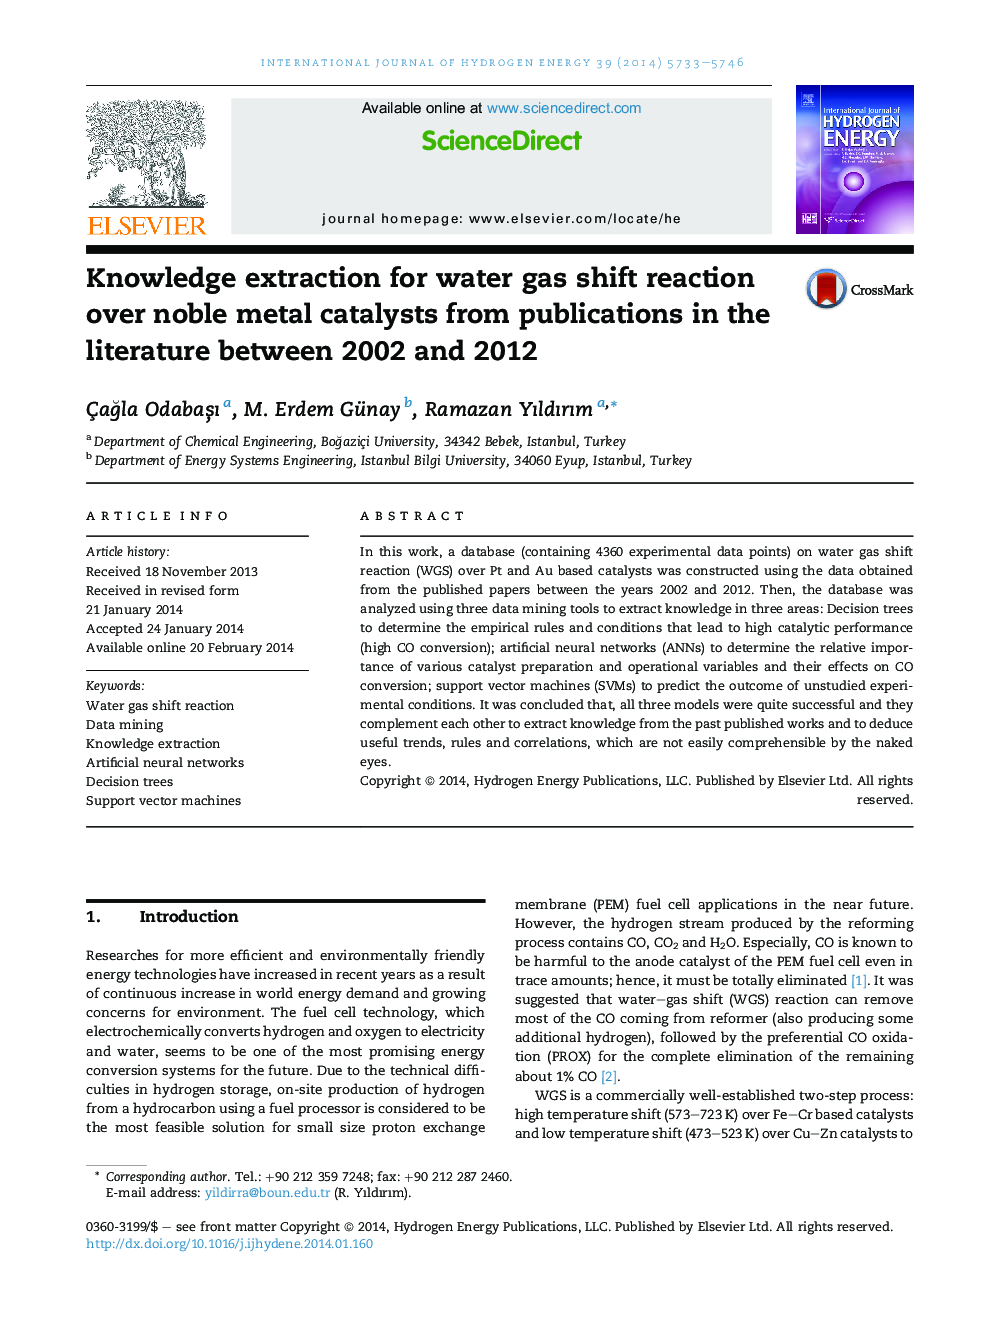 استخراج دانش برای واکنش تغییر آب گاز بر روی کاتالیزورهای فلز نجیب از انتشارات در ادبیات بین سال های 2002 و 2012 